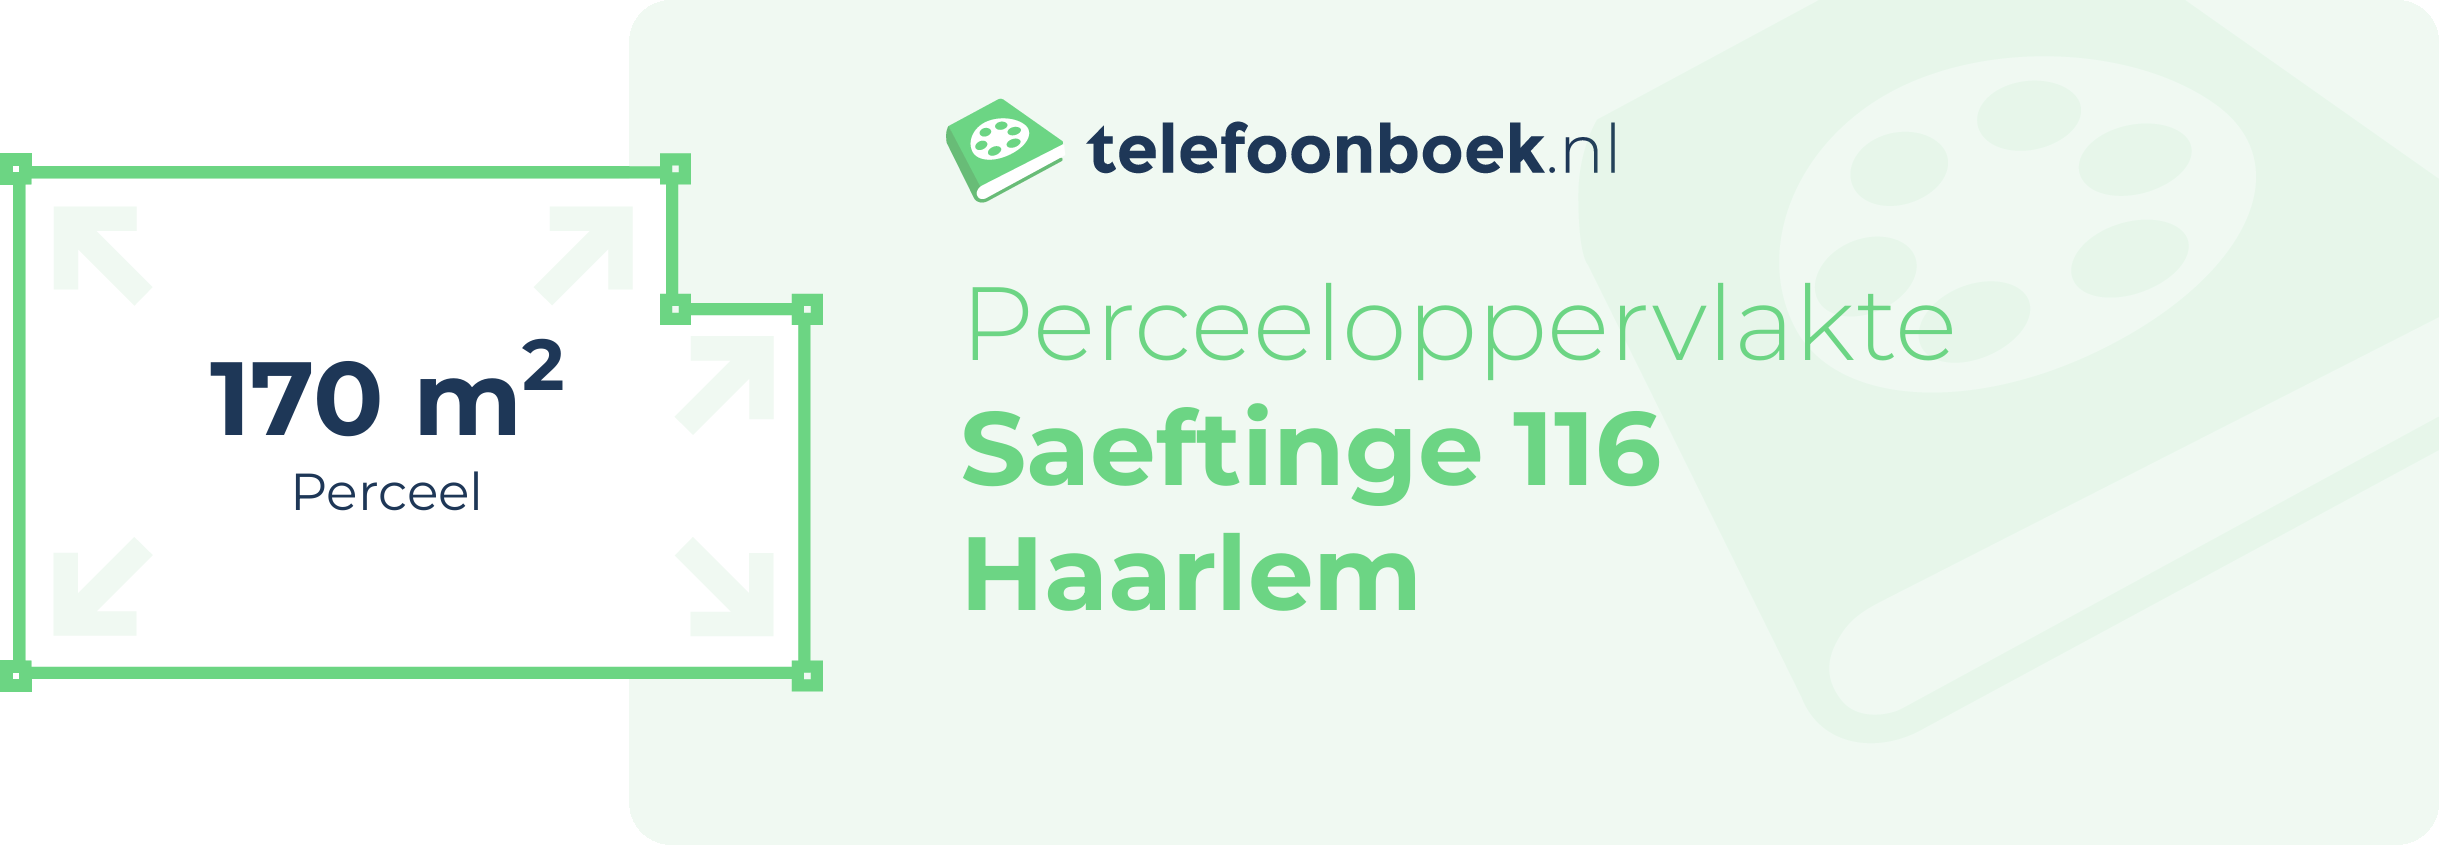 Perceeloppervlakte Saeftinge 116 Haarlem